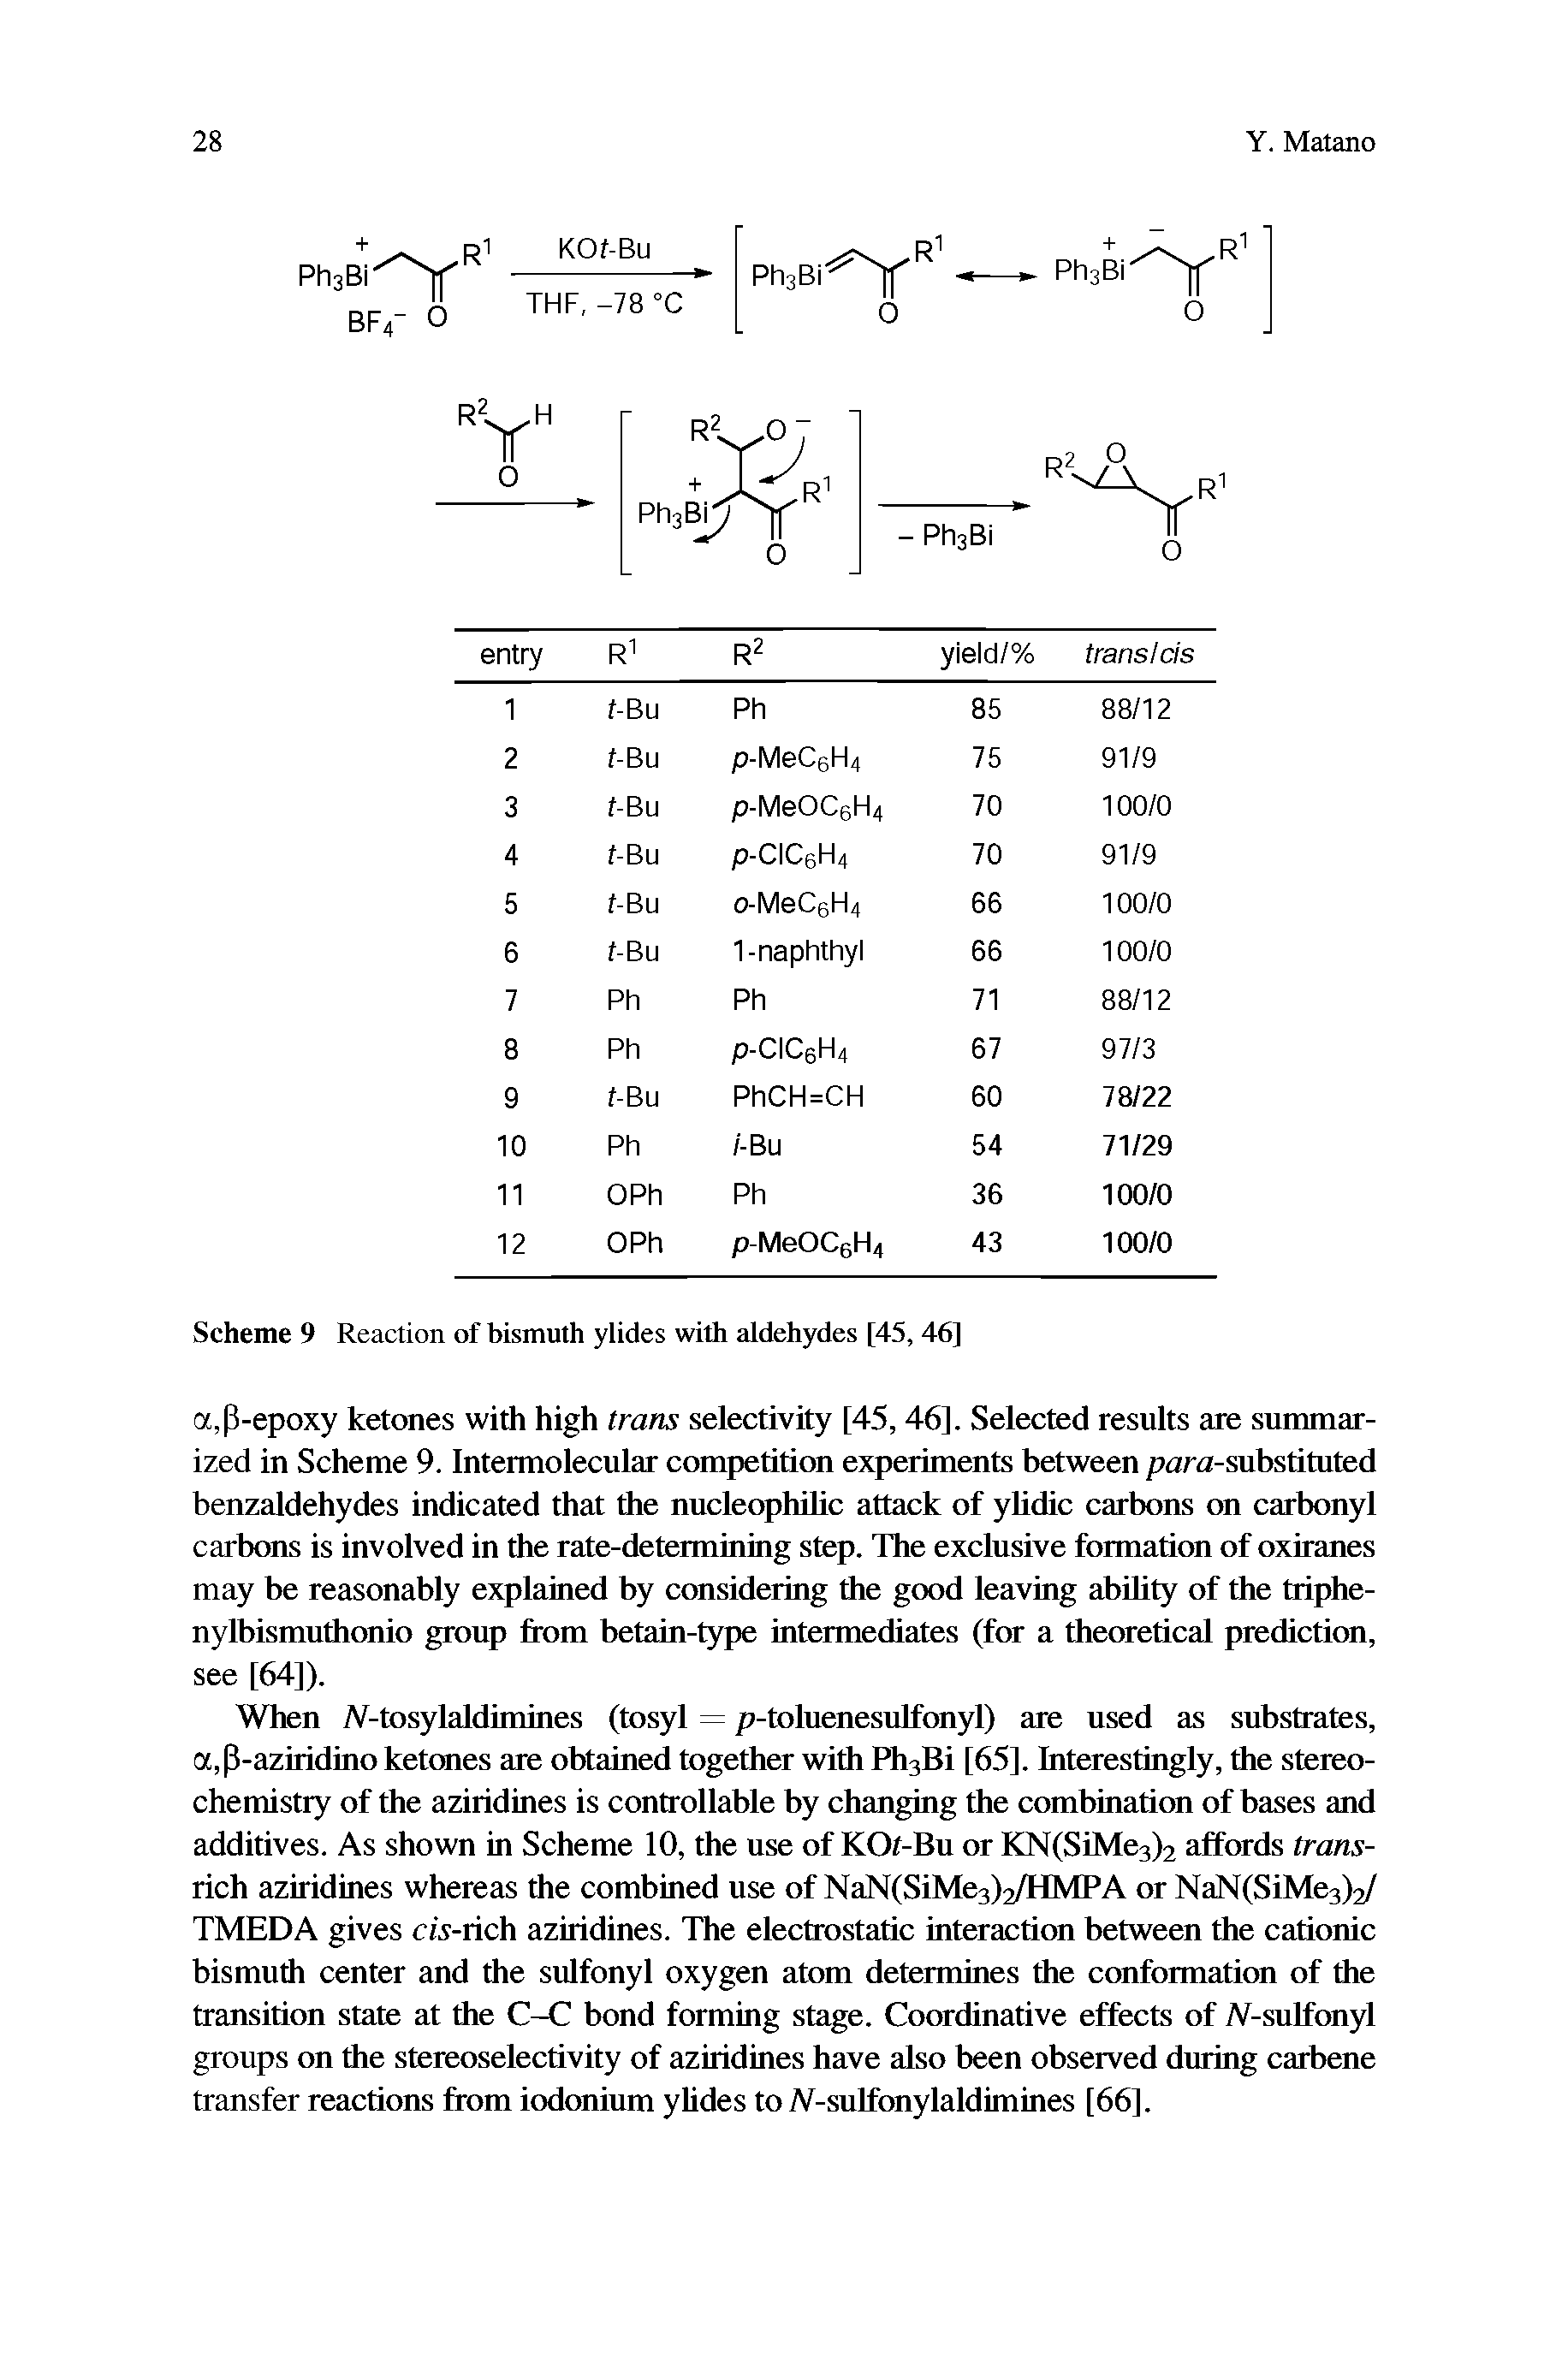 Scheme 9 Reaction of bismuth ylides with aldehydes [45, 46]...